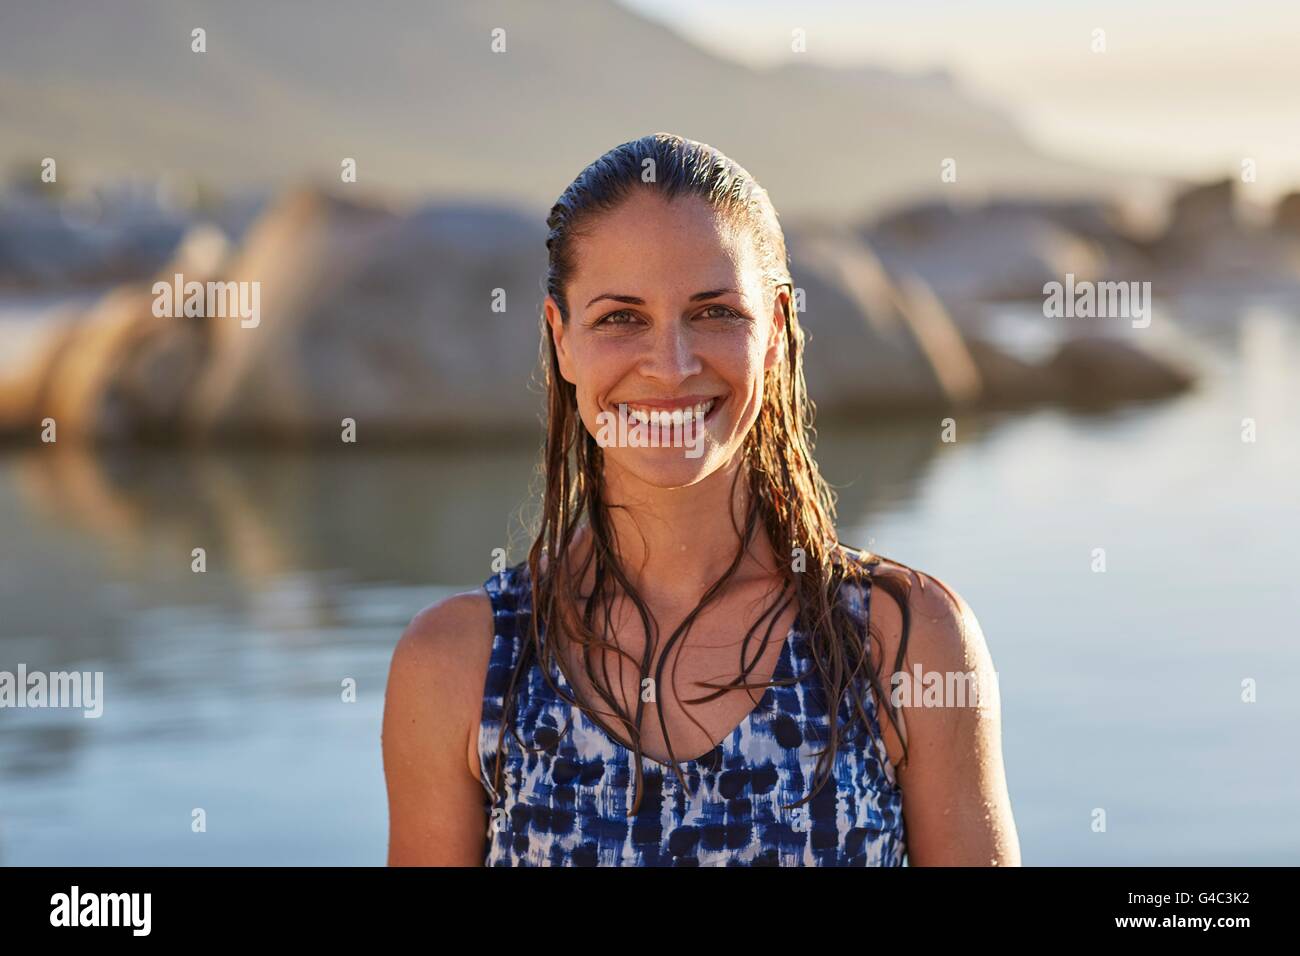 Parution du modèle. Jeune femme avec des cheveux humides smiling towards camera, portrait. Banque D'Images